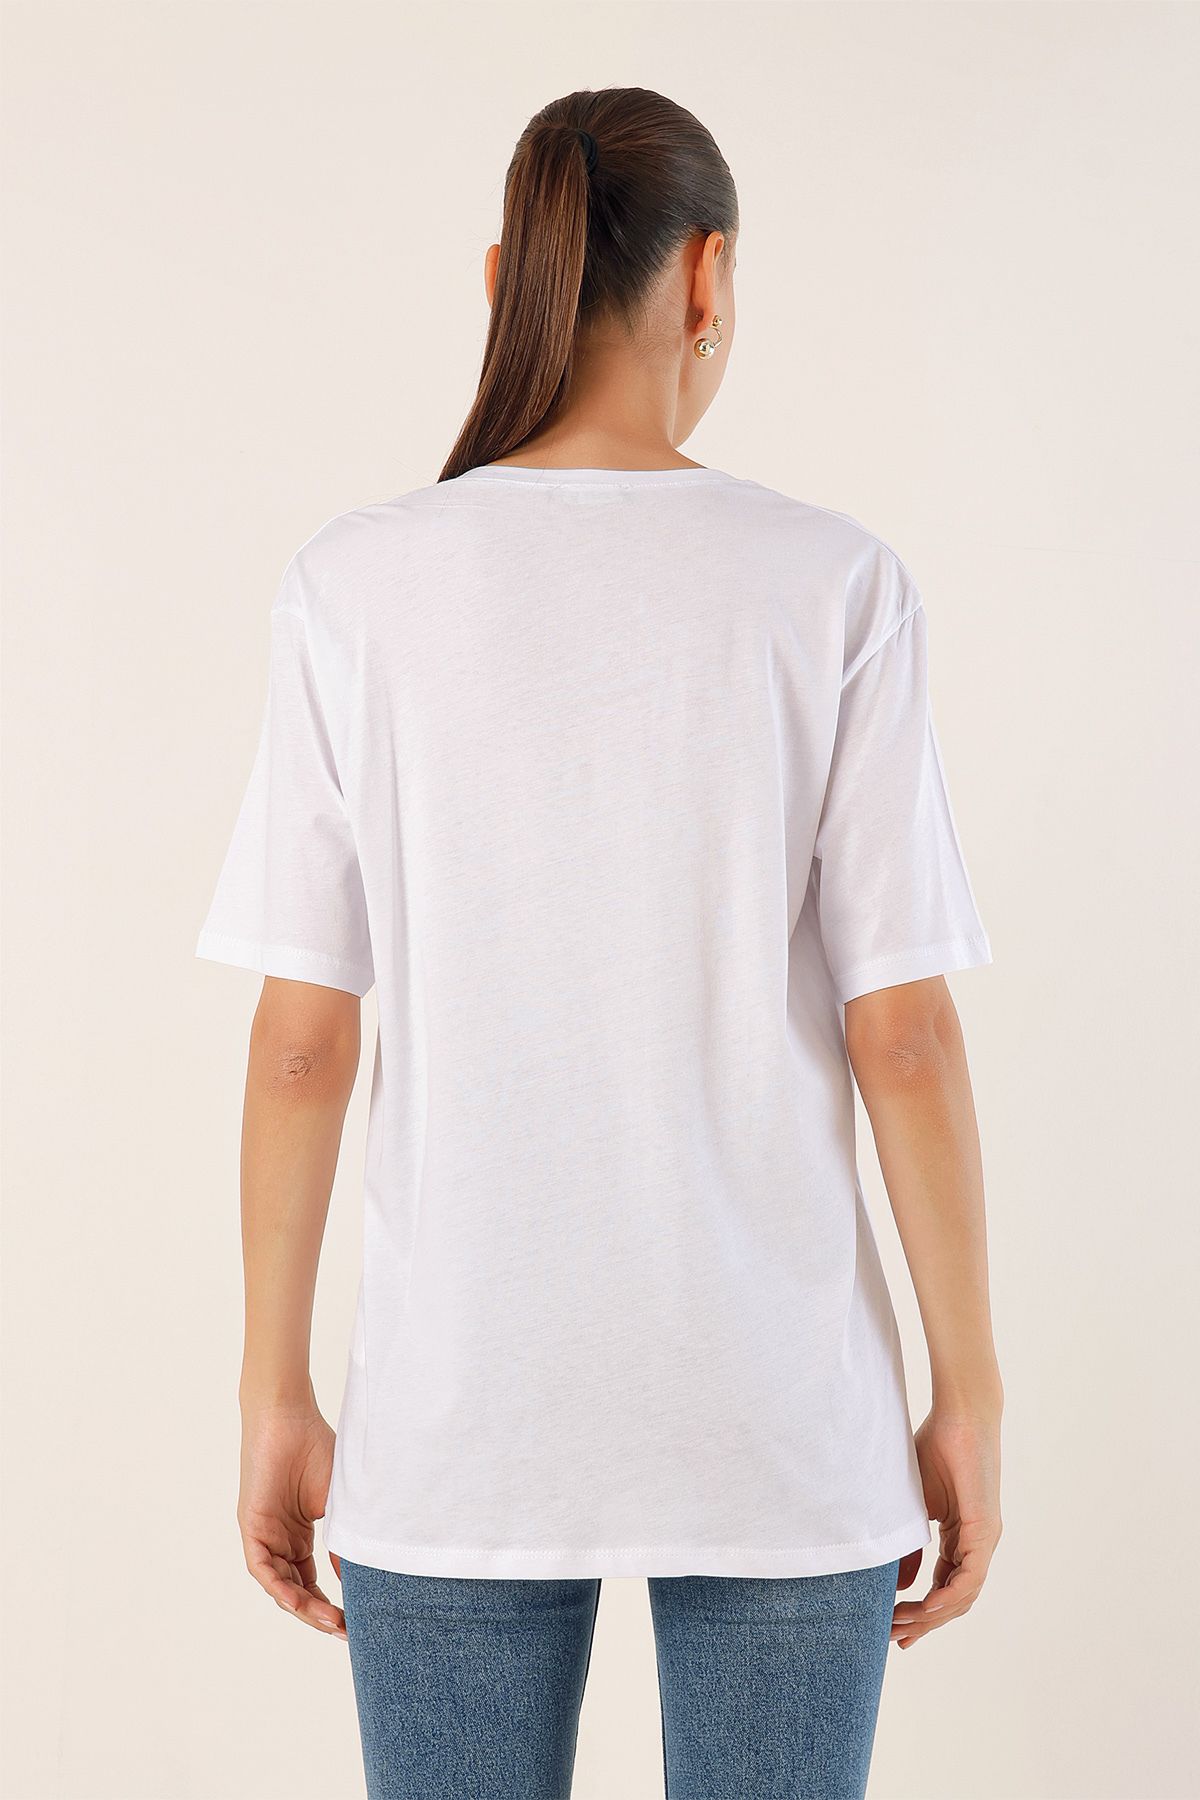 Bigdart تی شرت سایز بزرگ 4312 دوزی - سفید